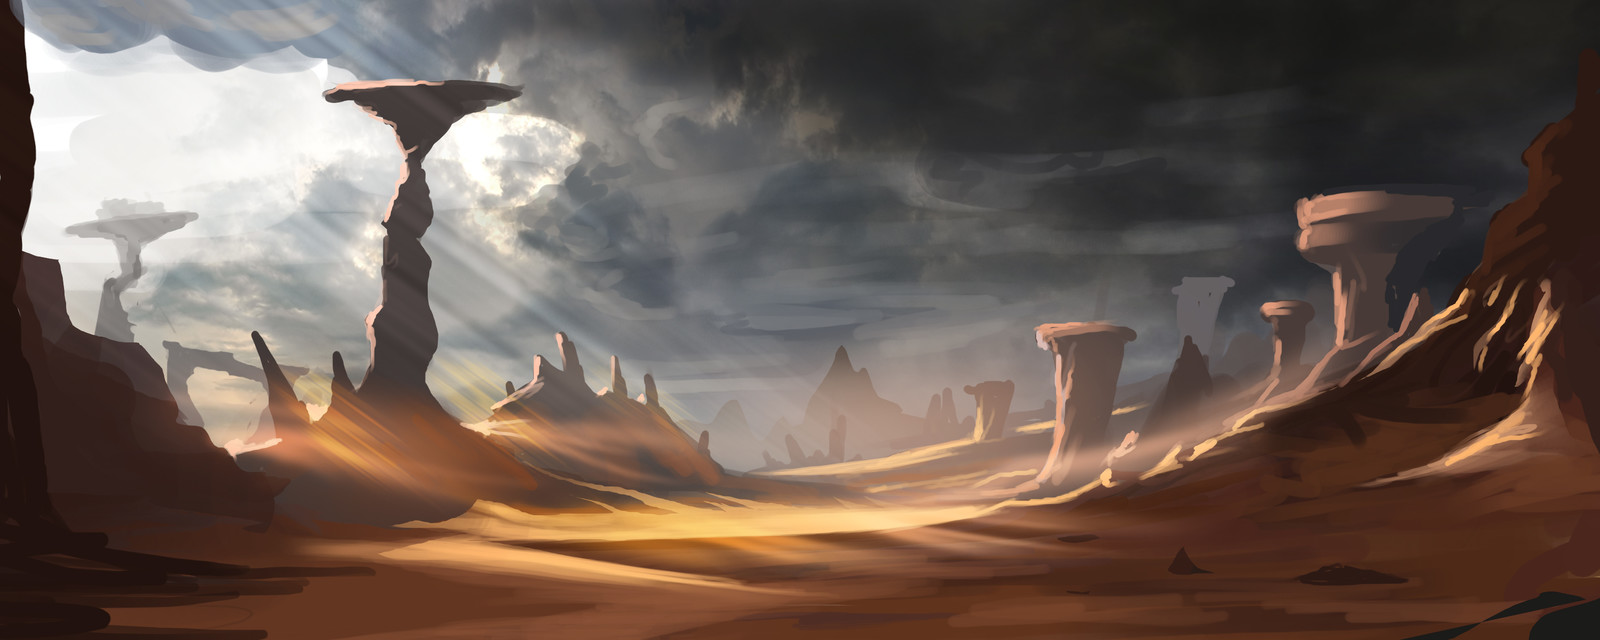 Desert Ambiance Concept Art.